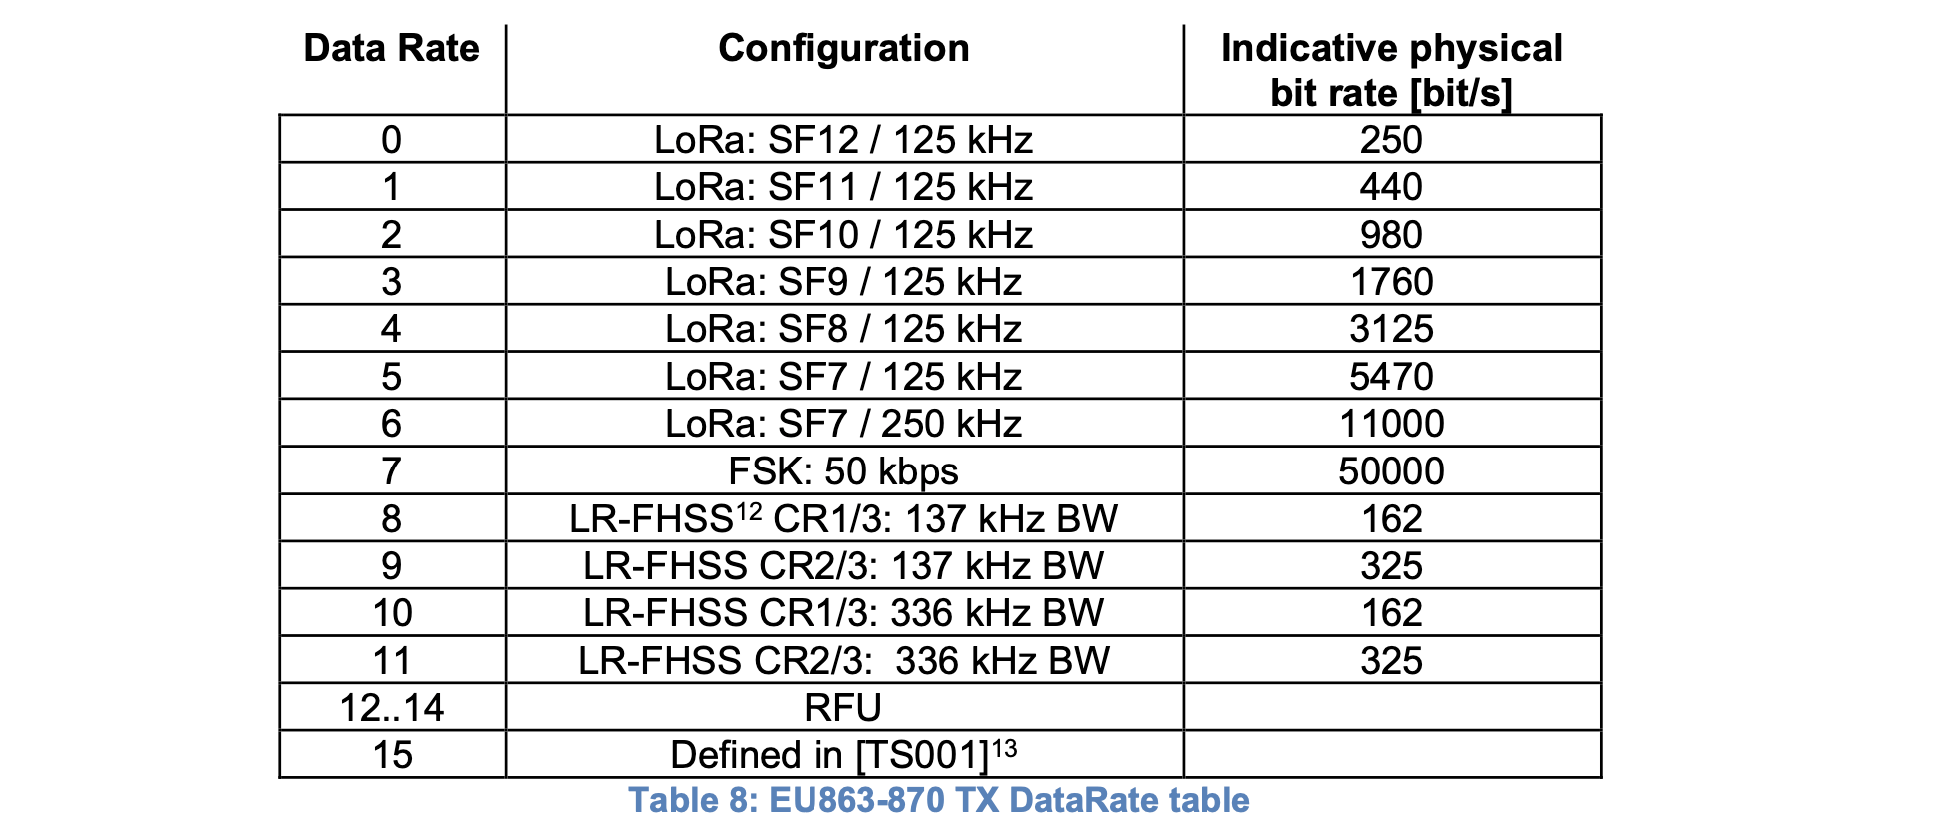 EU863-870配置的“数据速率码”对应关系如表所示。来源:RP002-1.0.3 LoRaWAN区域参数